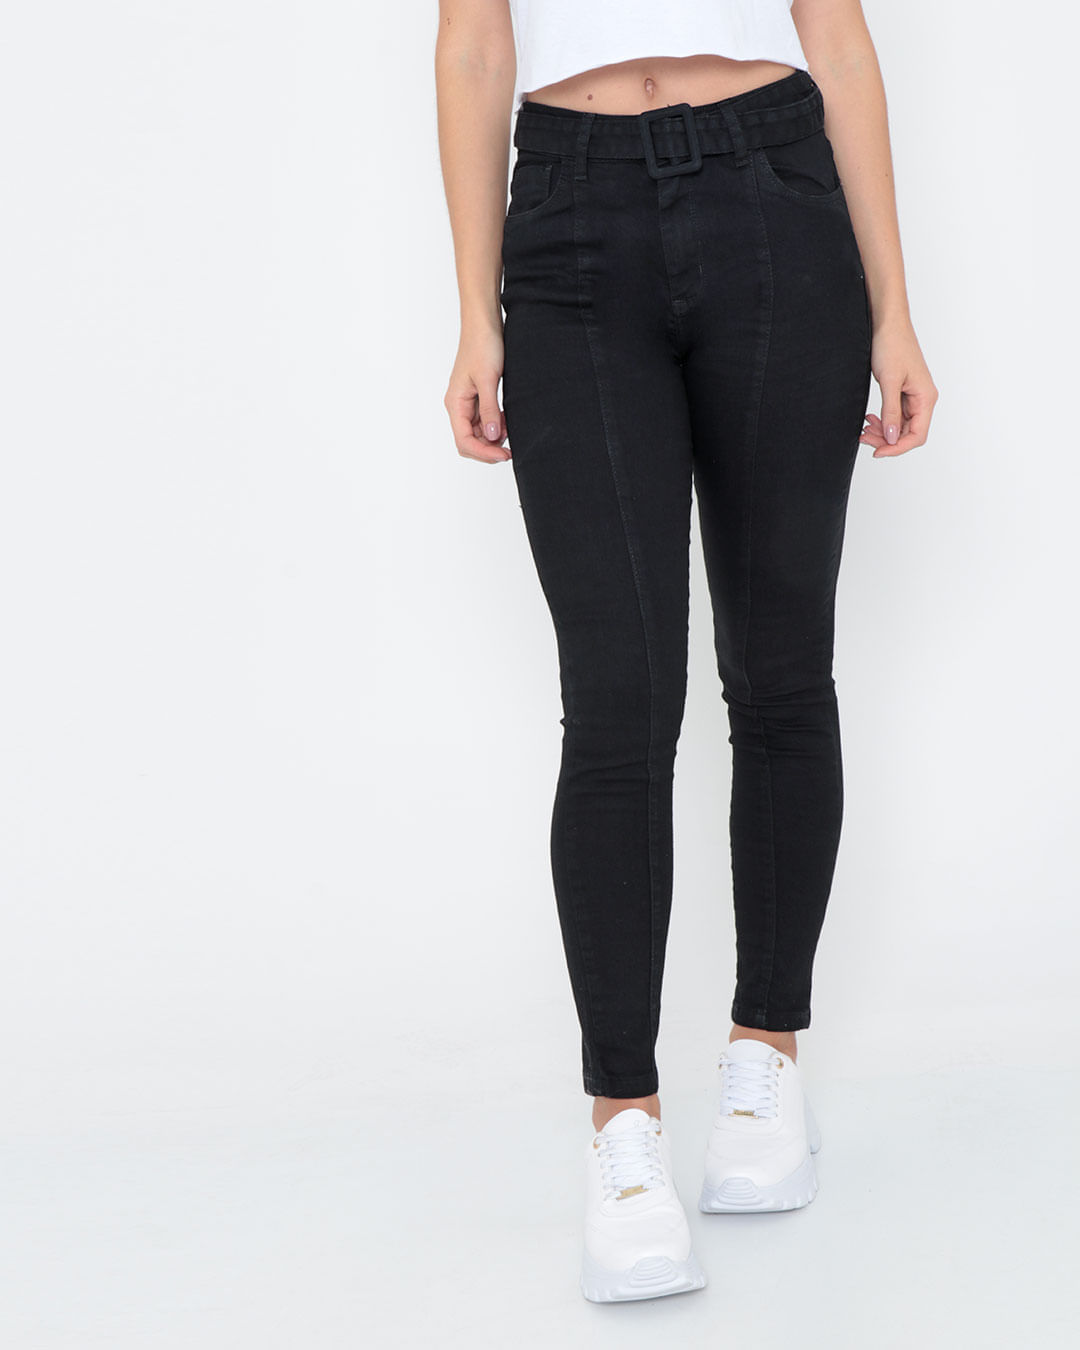 Calça Jeans Feminina Cintura Alta Com Cinto Preta